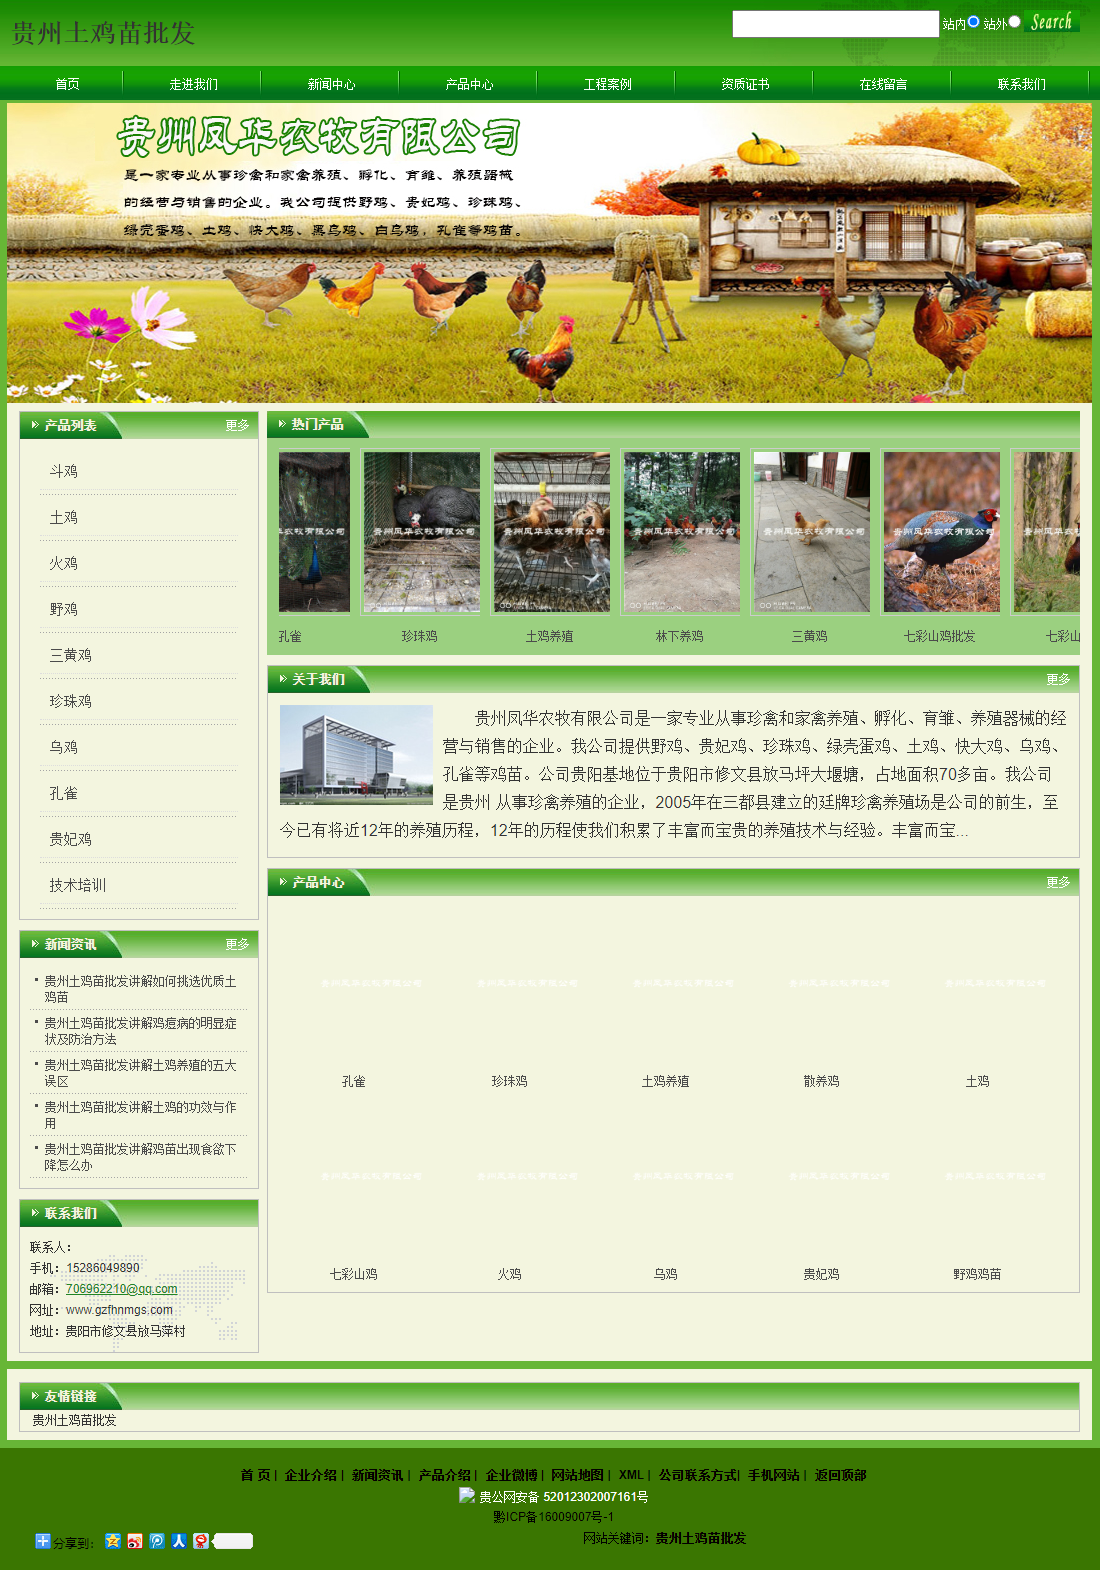 贵州凤华农牧有限公司网站案例